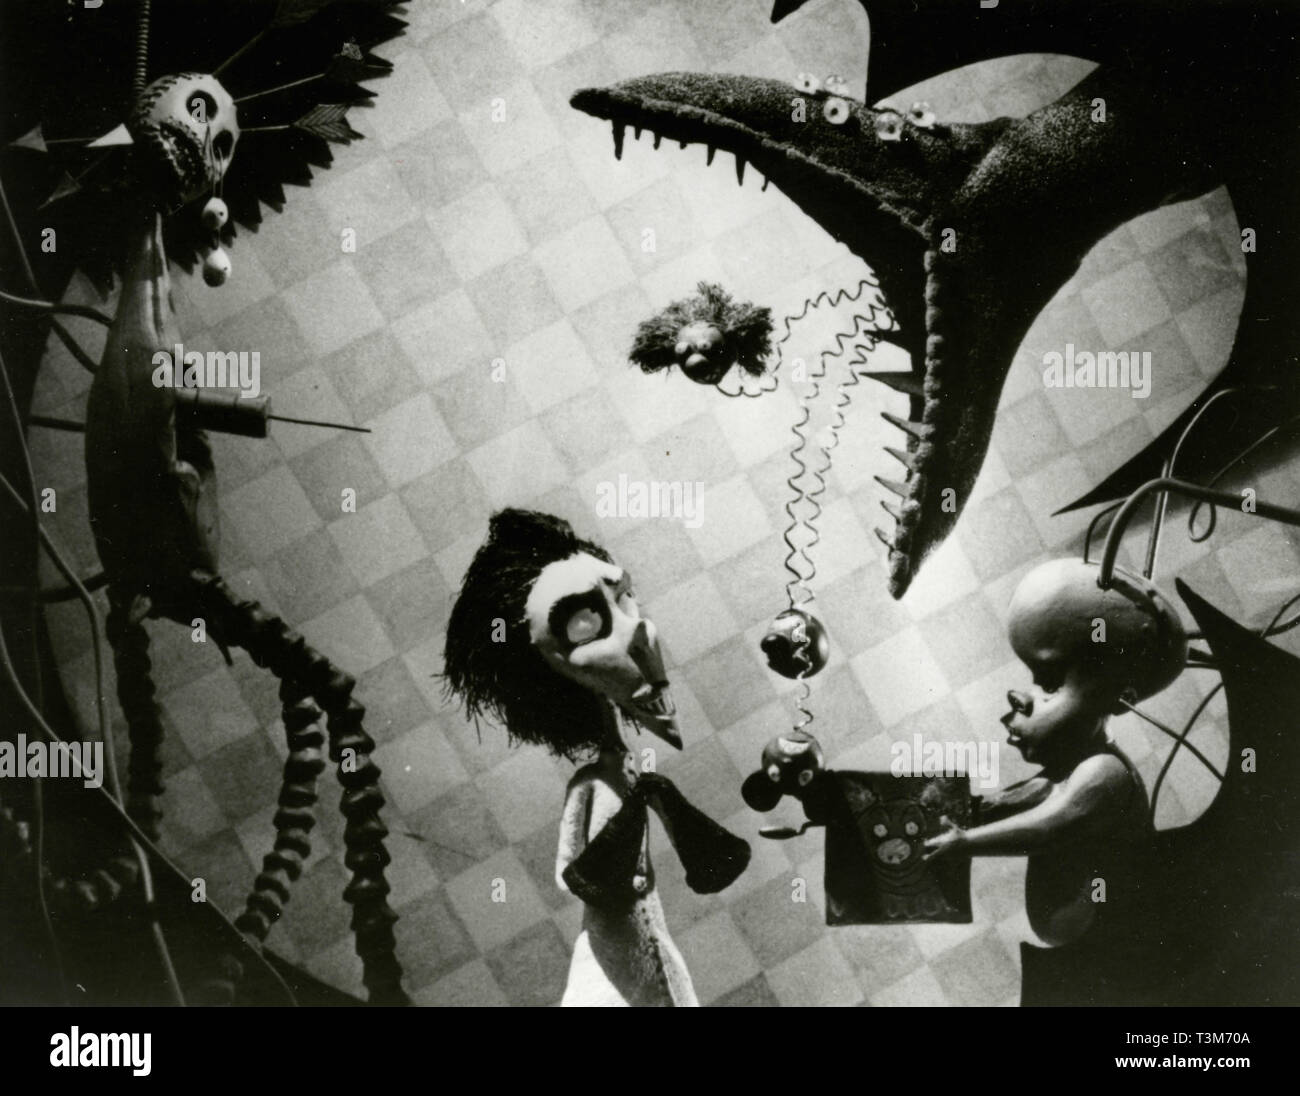 Szene aus der Animation Film Vincent von Tim Burton, 1982 Stockfotografie -  Alamy